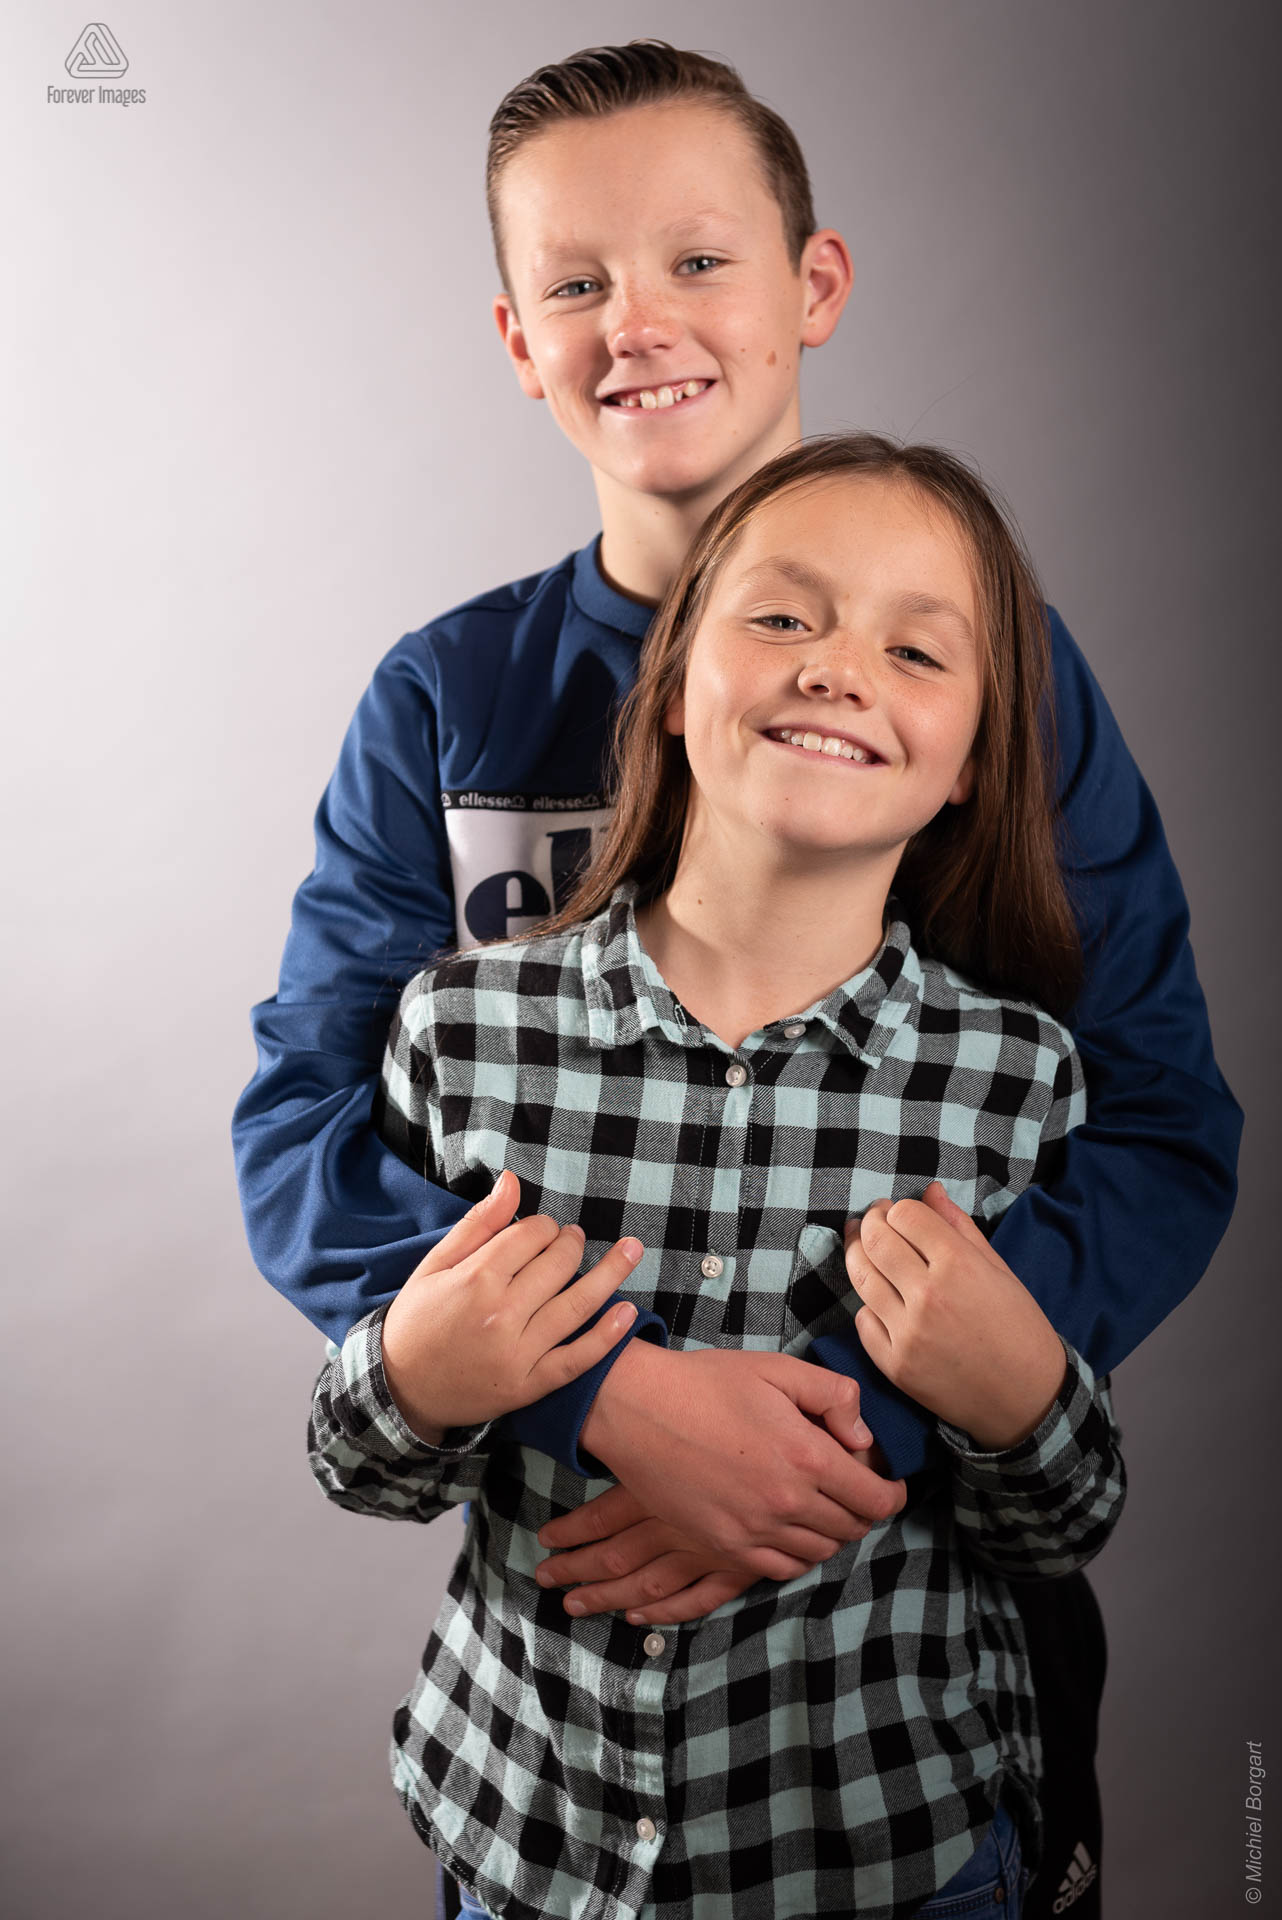 Portretfoto grote broer met zus in zijn armen | Portretfotograaf Michiel Borgart - Forever Images.